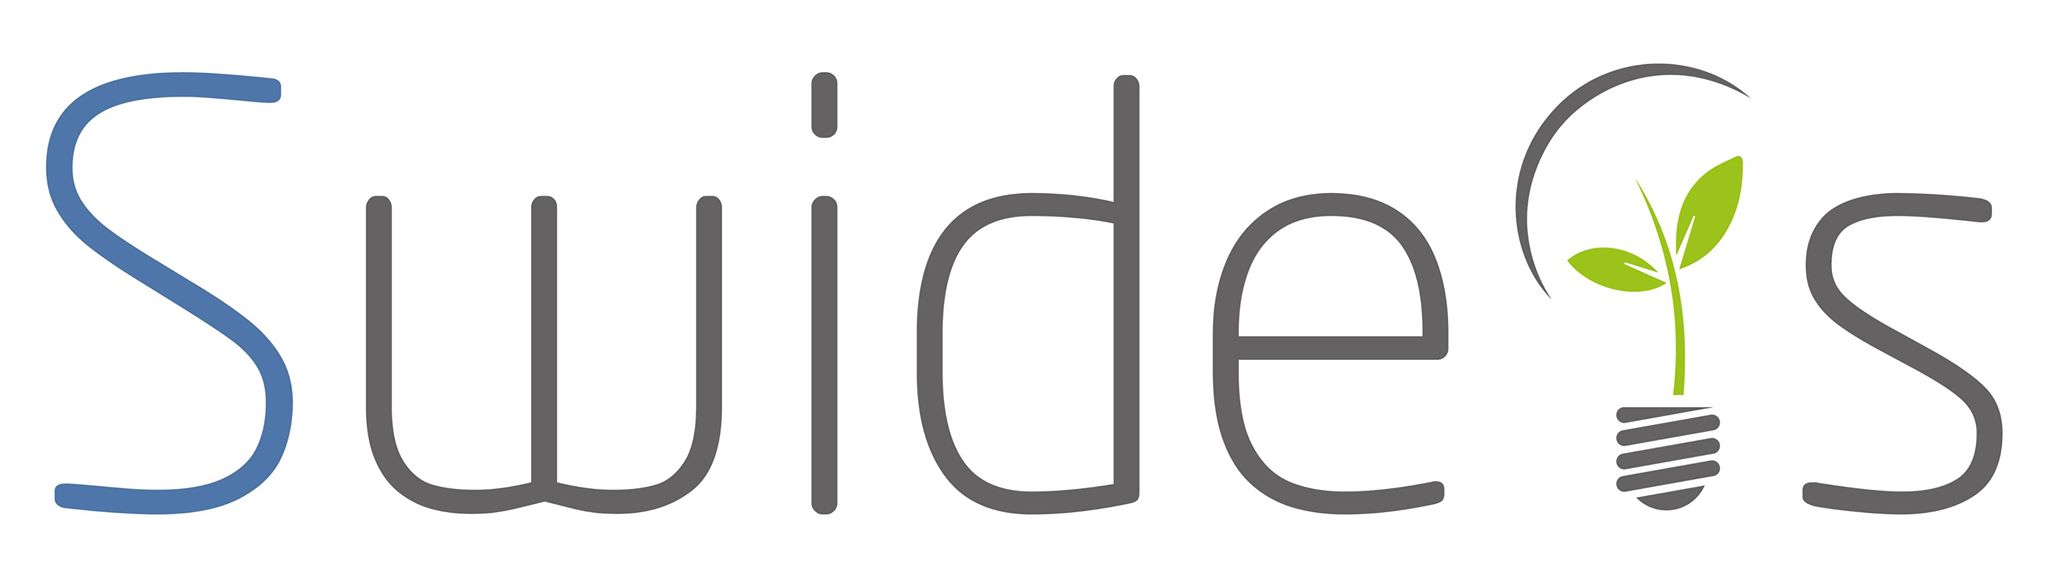 Swideas Logo mit Hintergrund